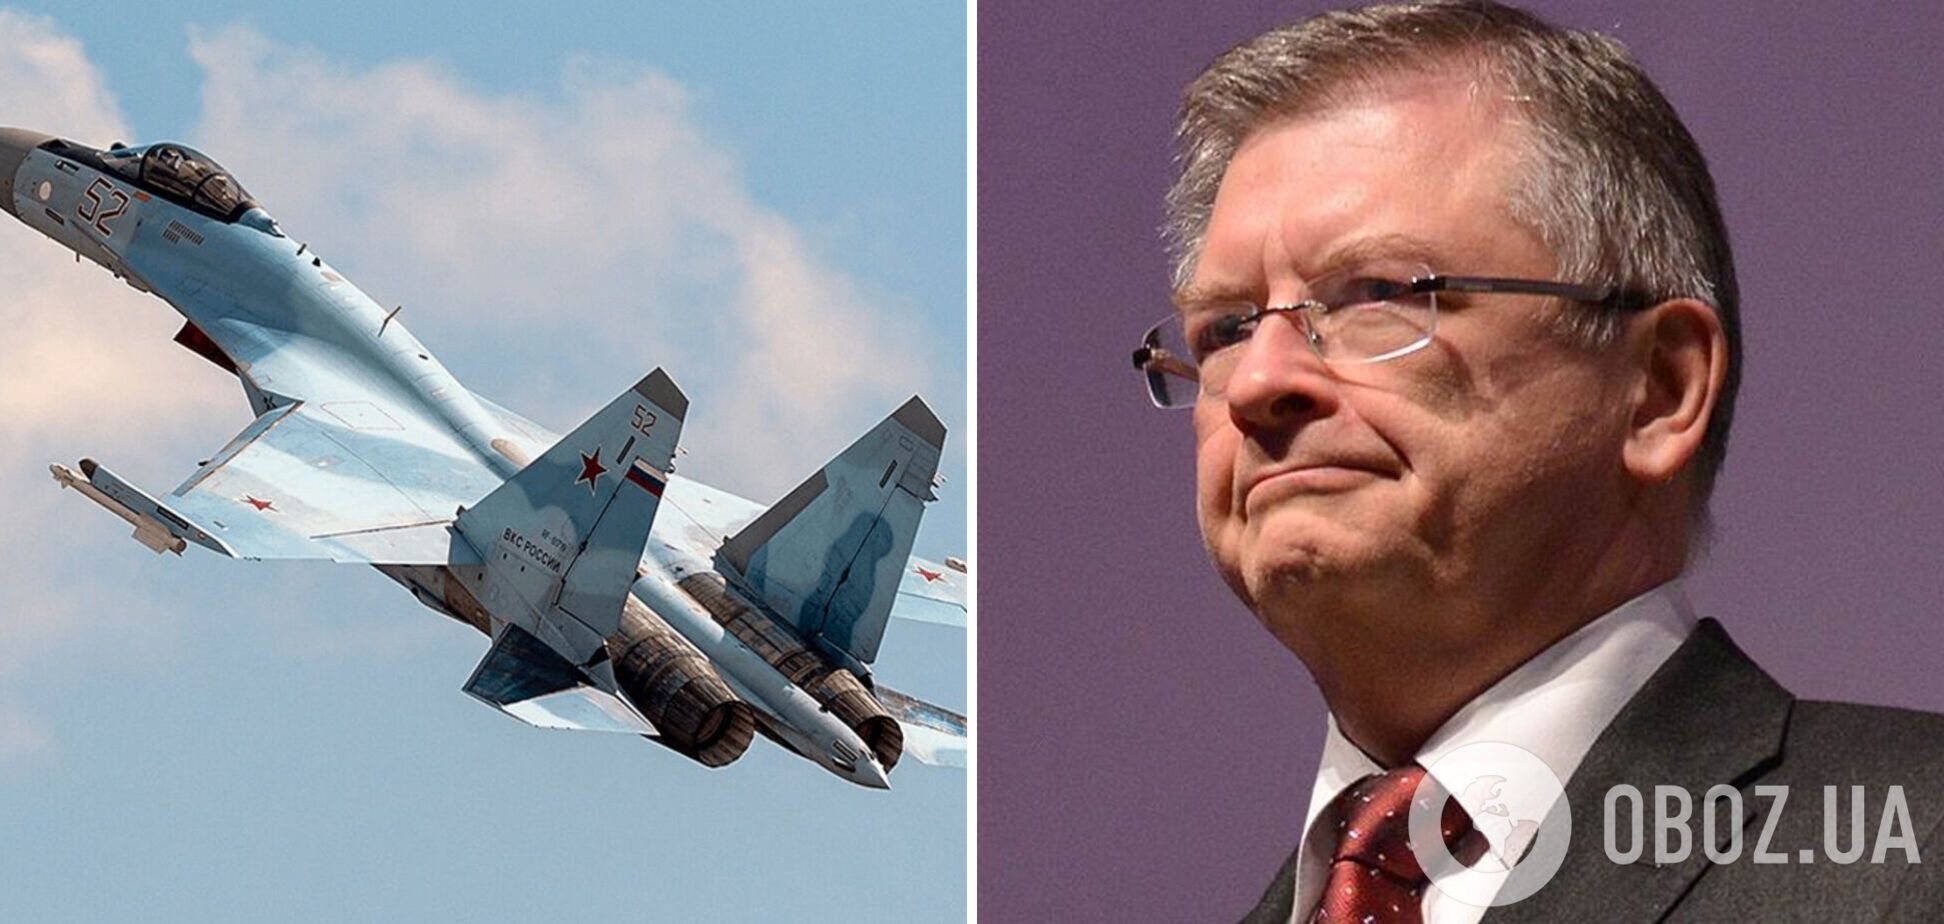 Польша вызвала российского посла 'на ковер' из-за перехвата своего самолета истребителем РФ